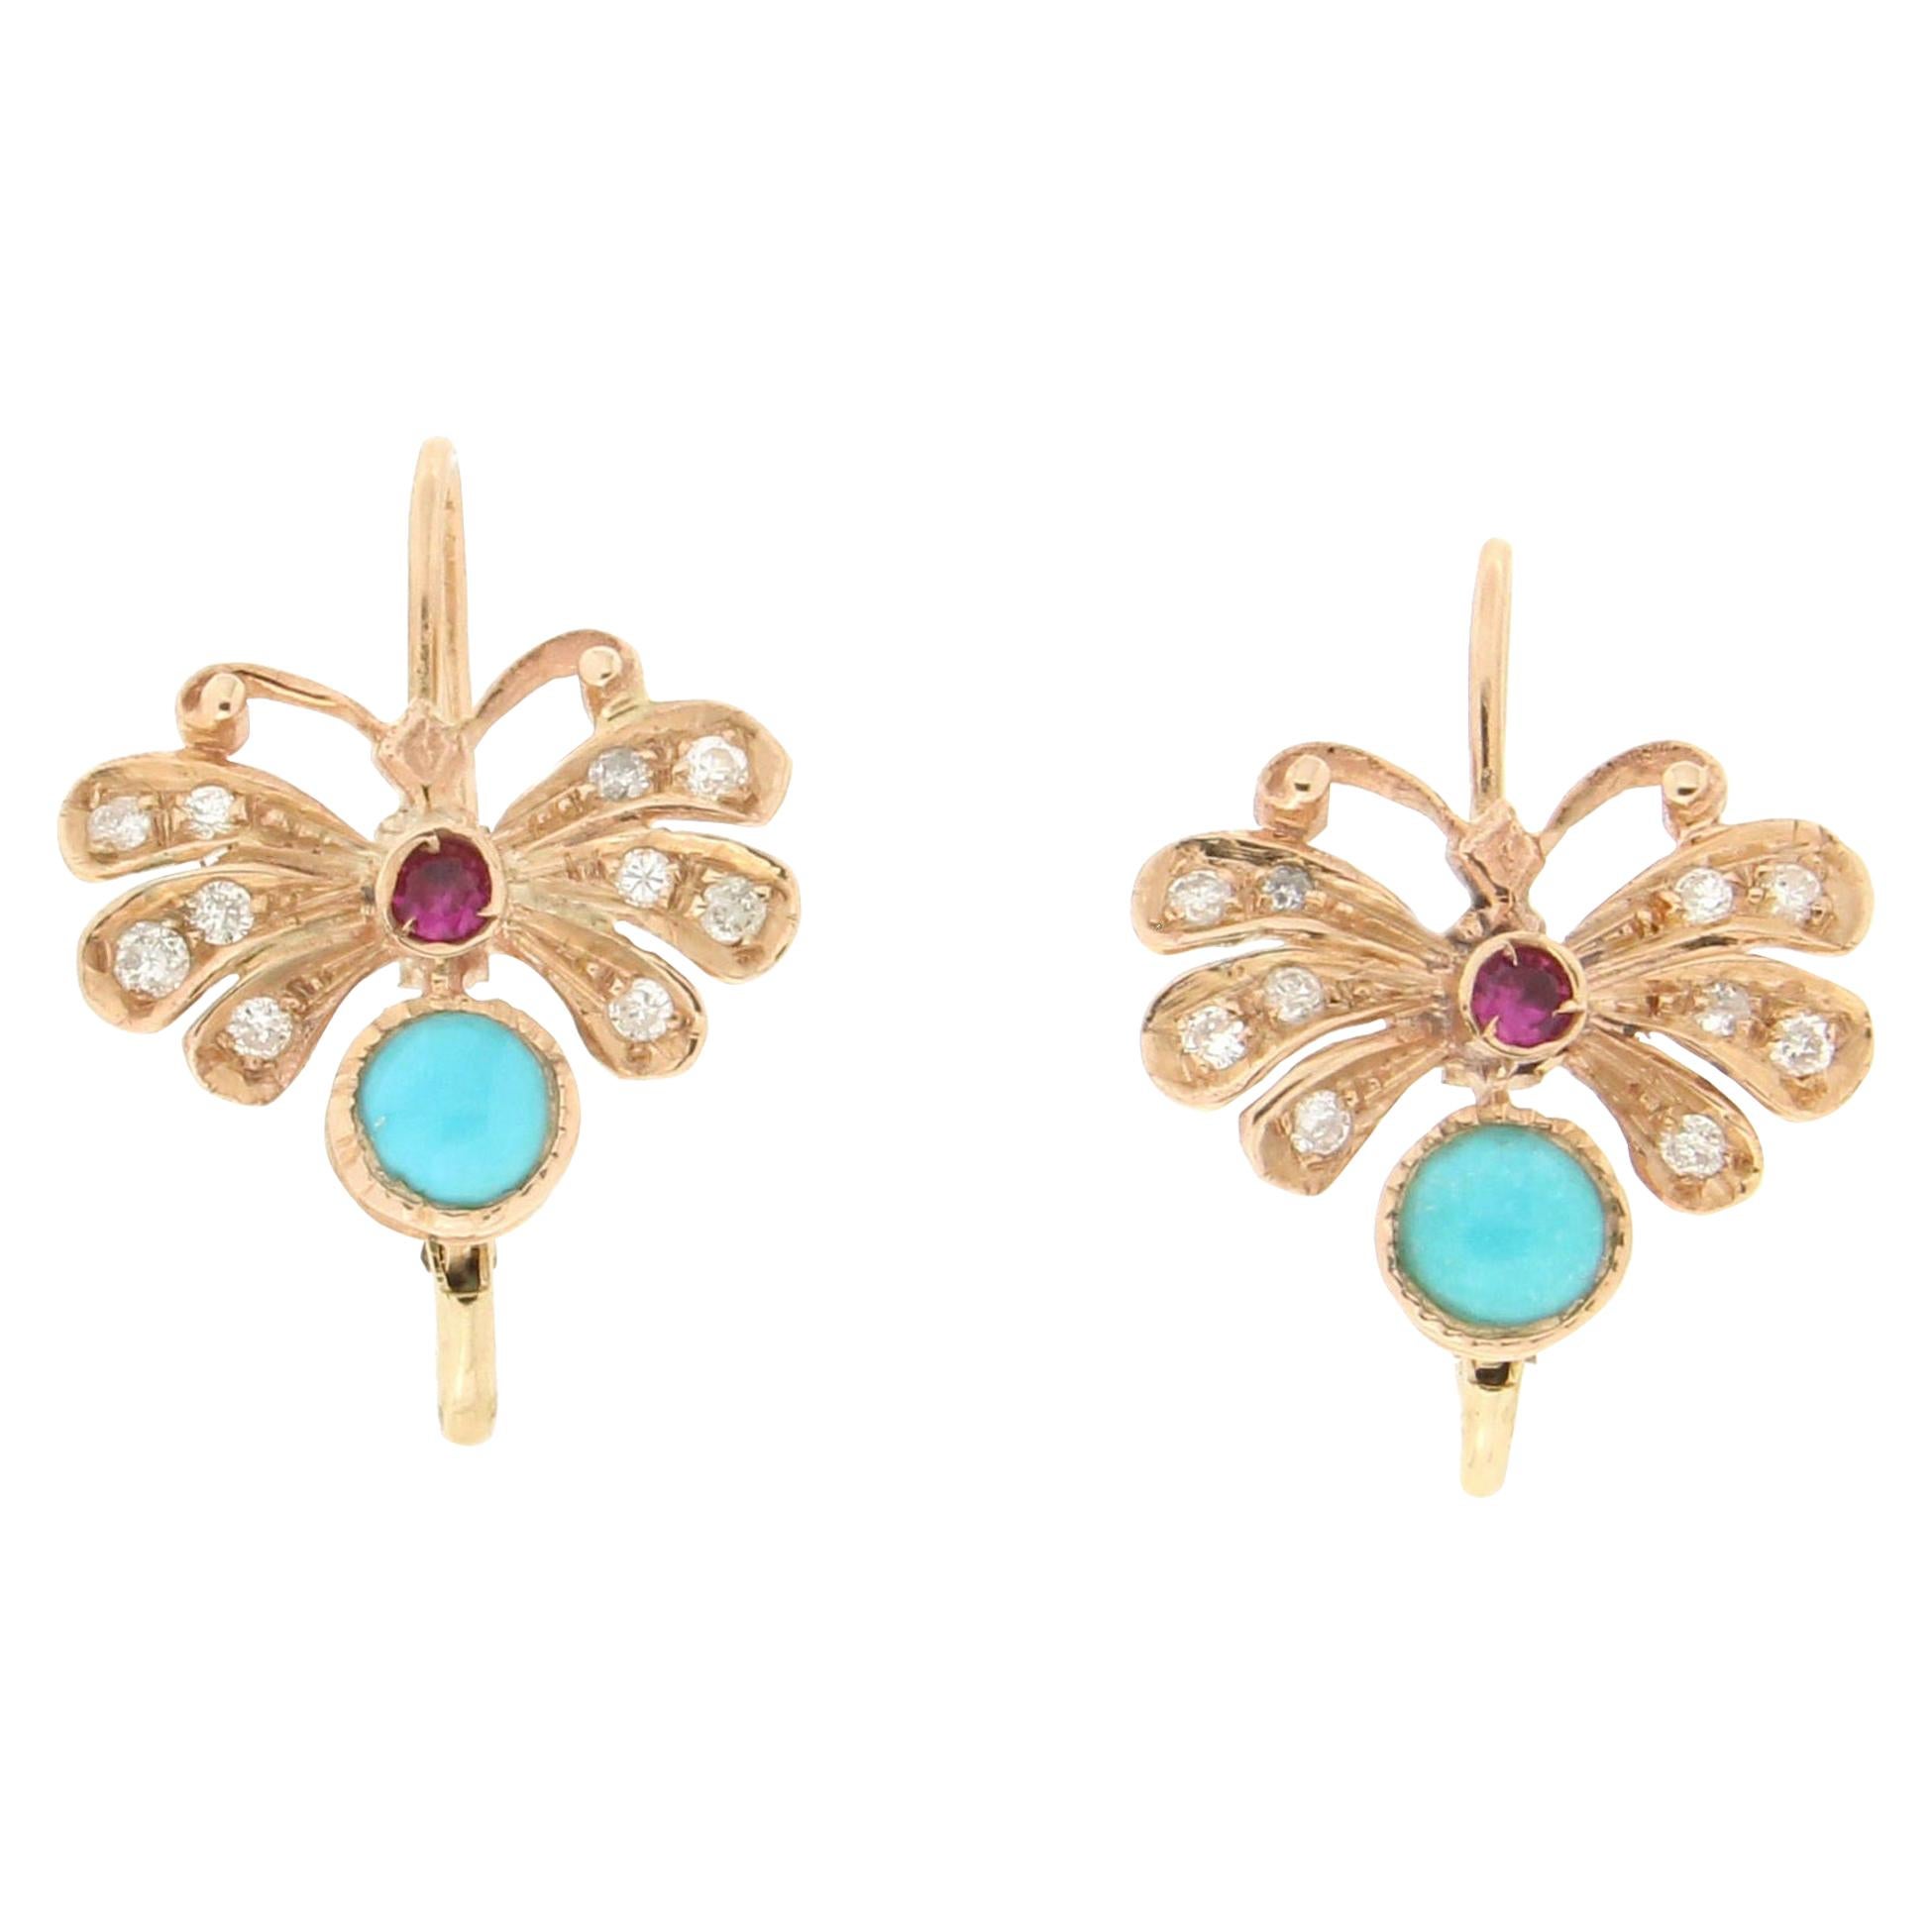 Handgefertigte Schmetterling-Ohrringe aus 14 Karat Gelbgold mit Diamanten, Rubin und Türkis